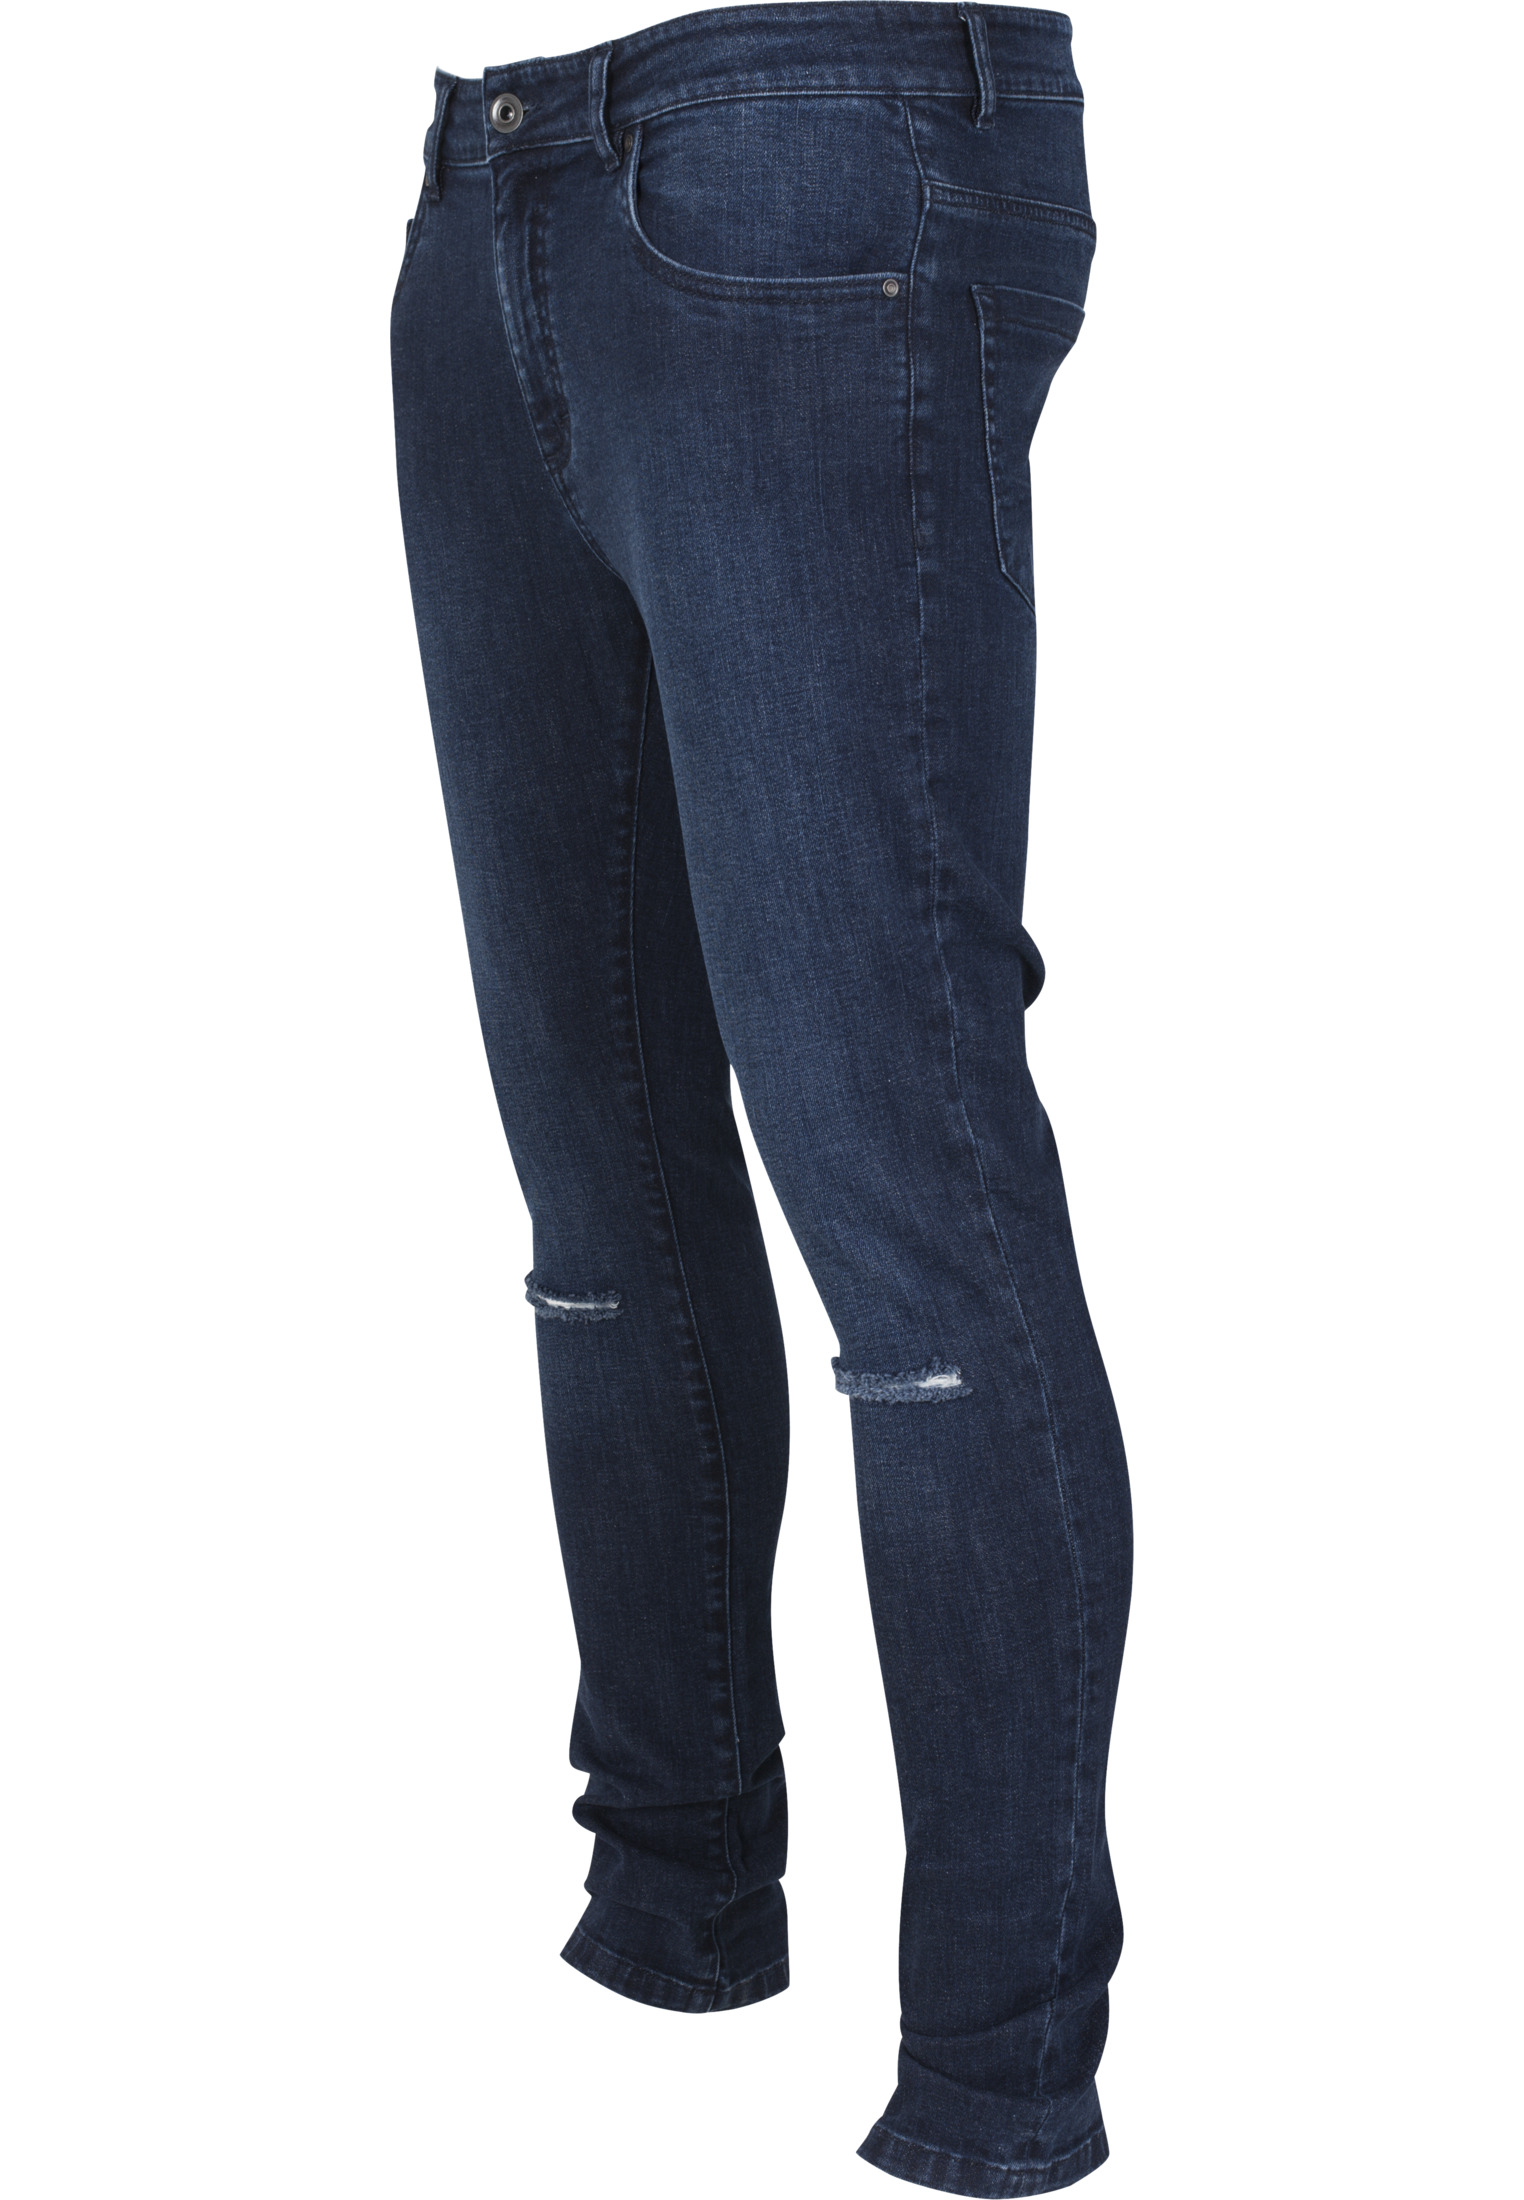 Hosen Slim Fit Knee Cut Denim Pants in Farbe dark blue